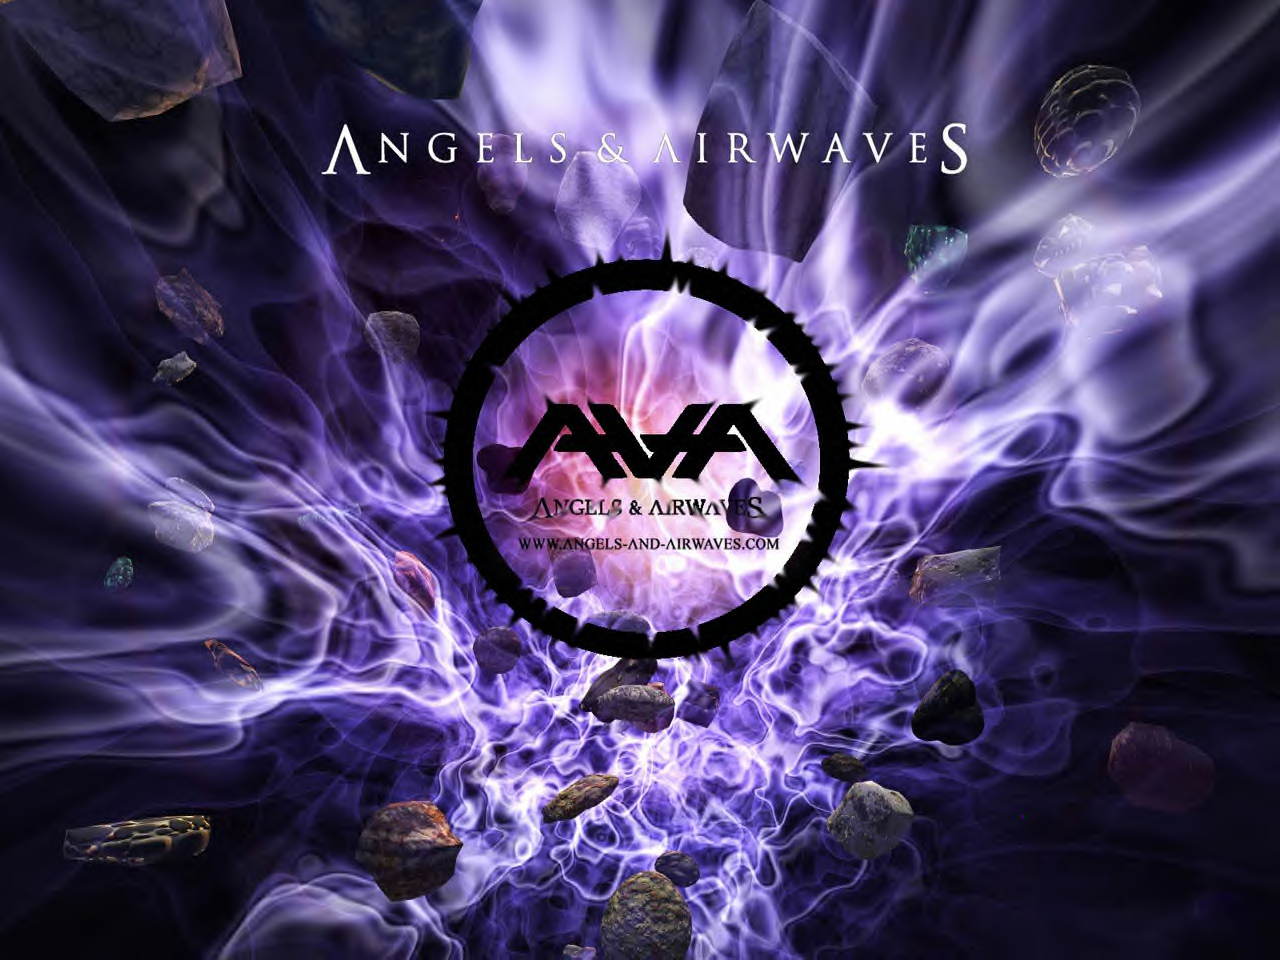 Angels & Airwaves - Angels and Airwaves Wallpaper (390973) - Fanpop